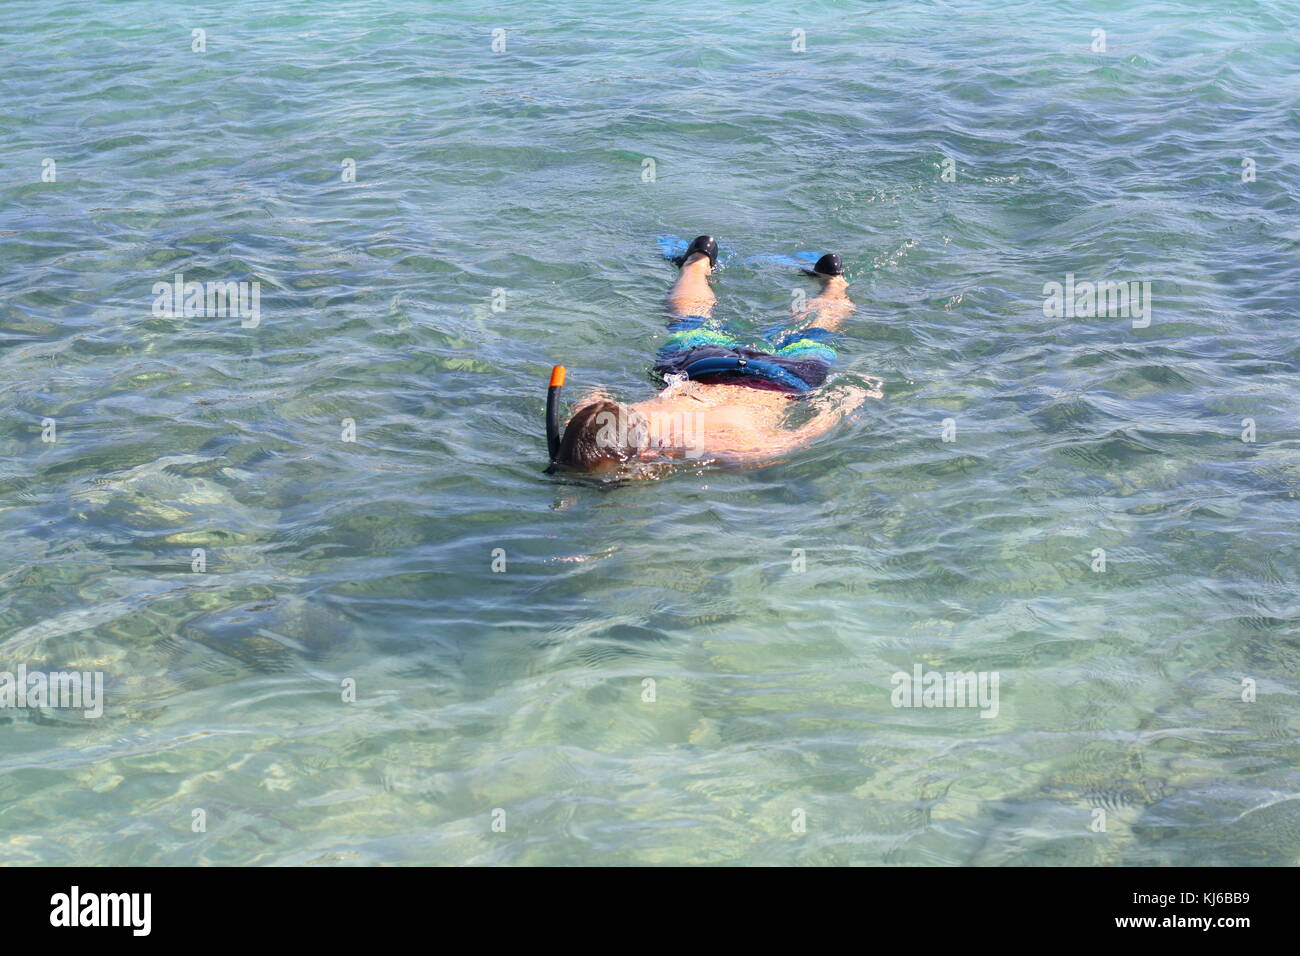 Un snorkeling immersioni in spiaggia acqua di mare, per trovare le conchiglie e osservare pesci. Foto Stock